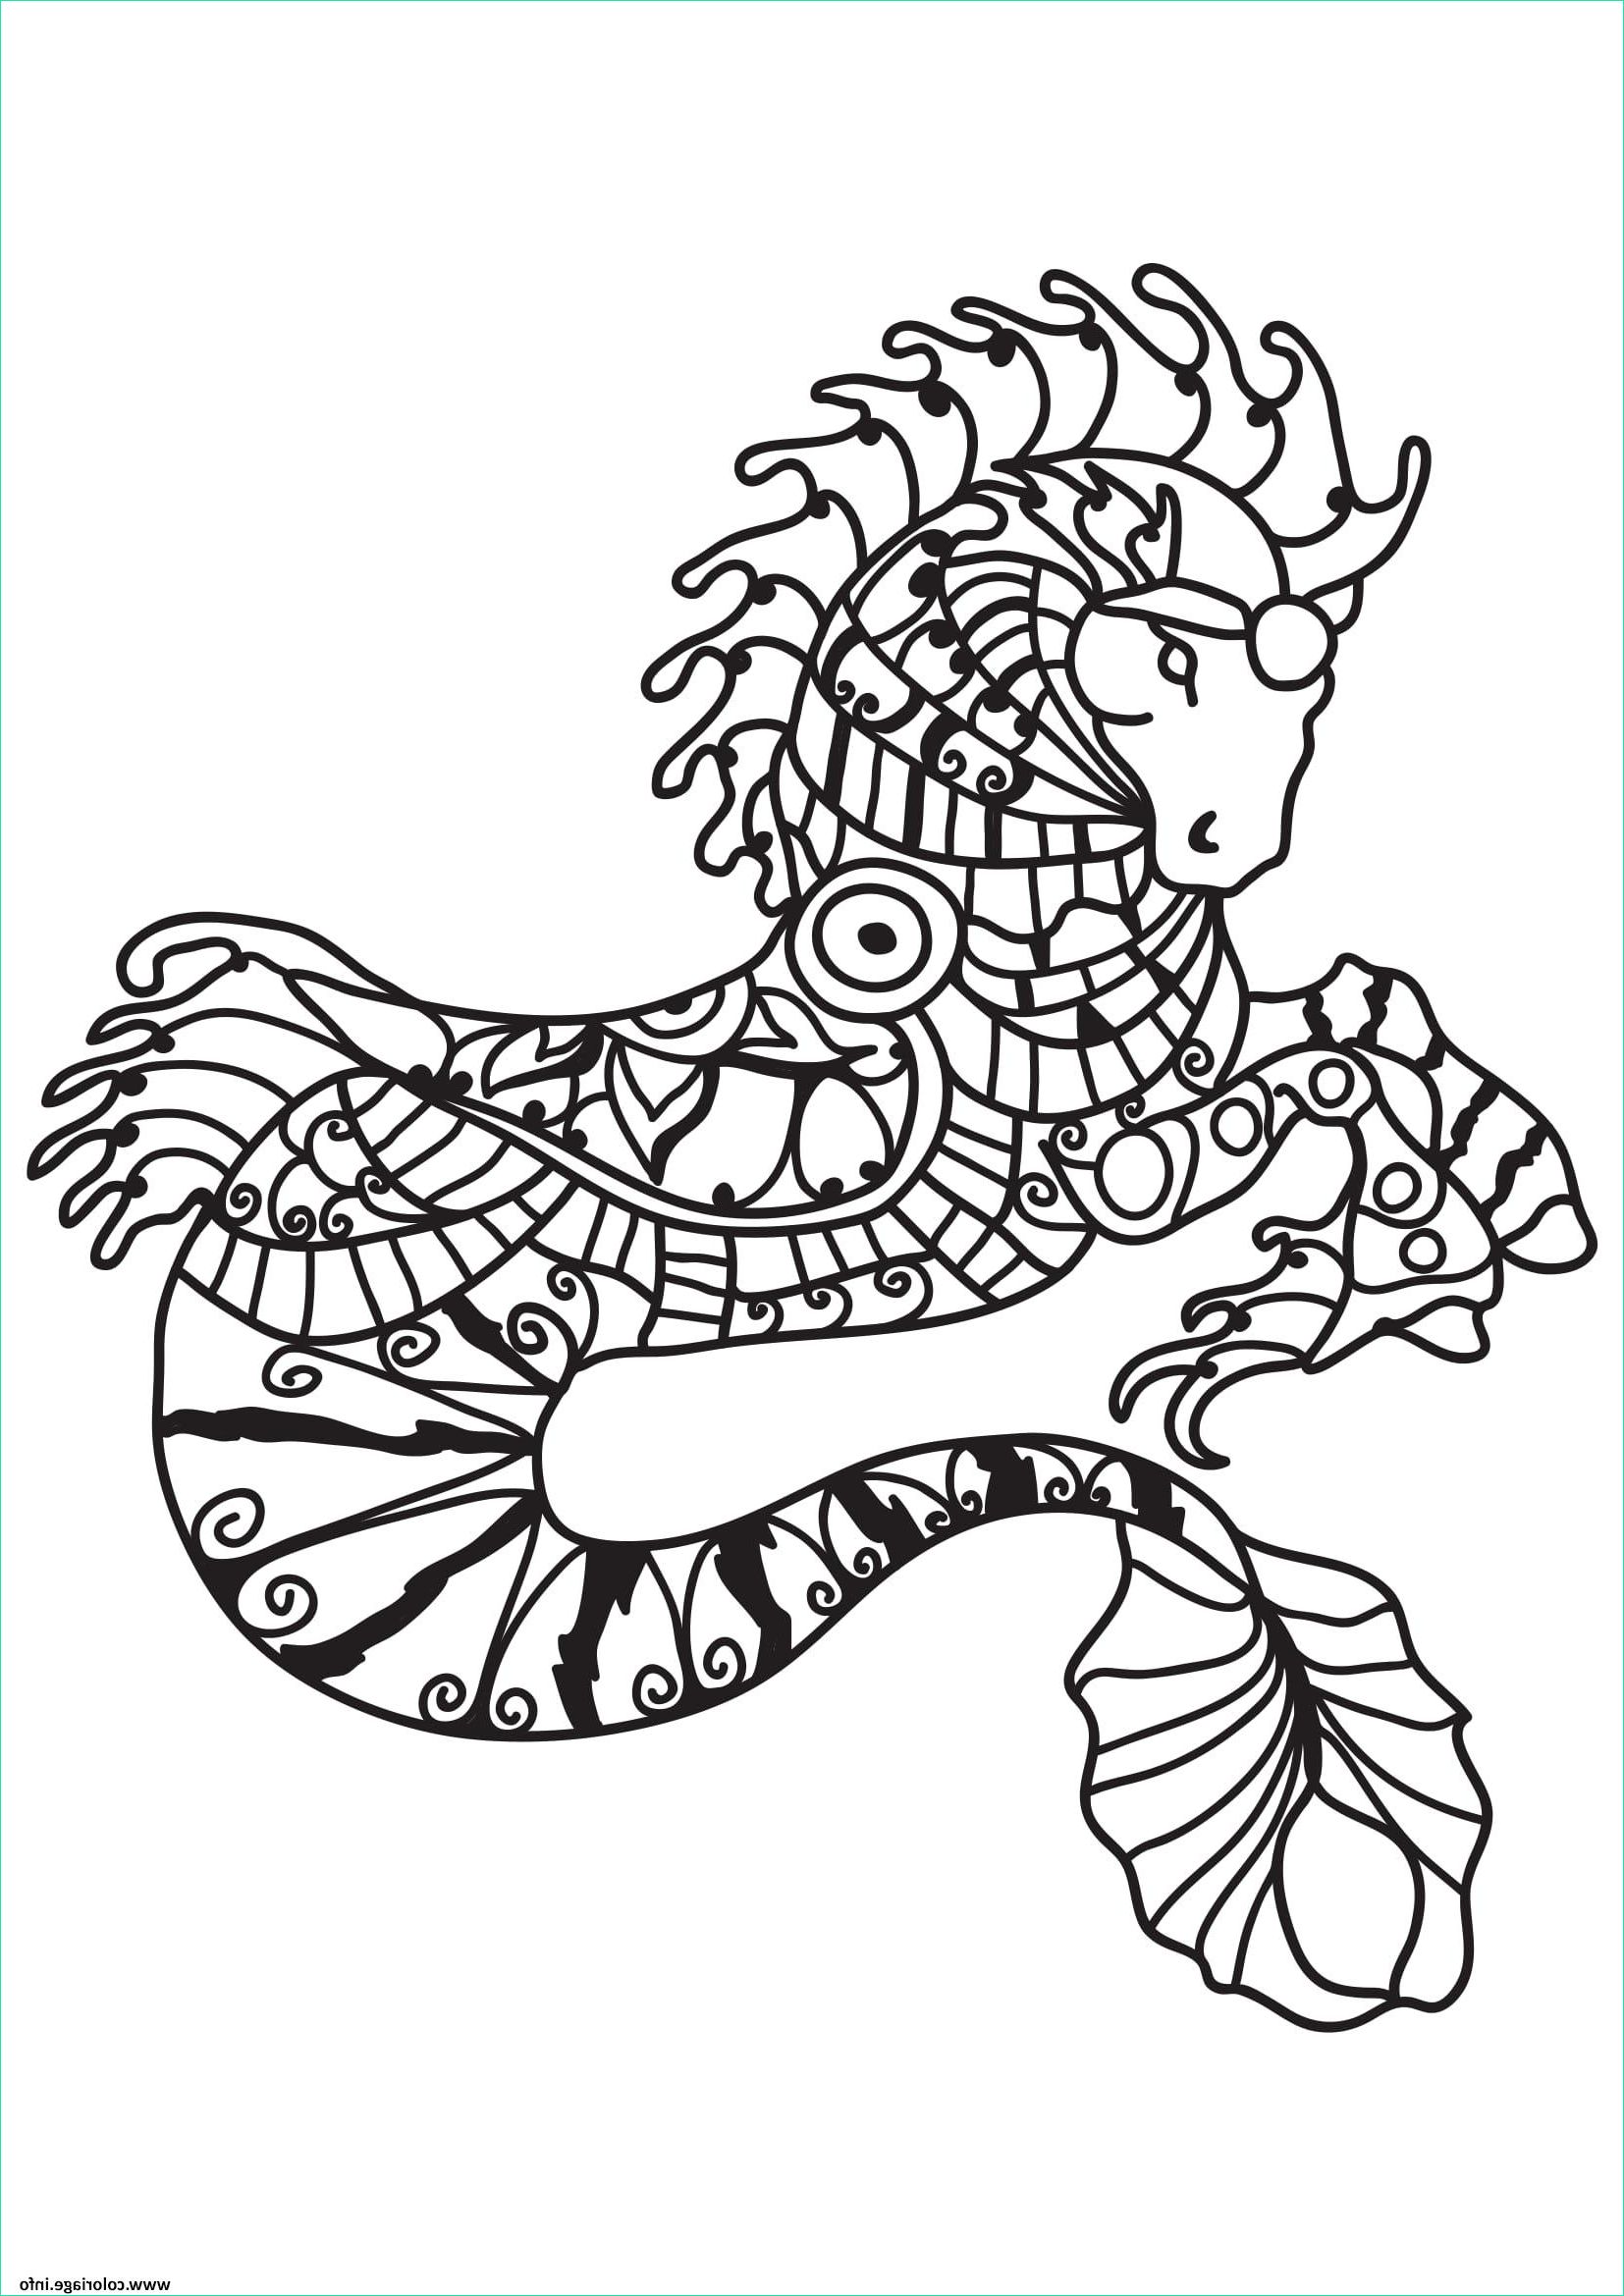 Dessin De Sirene à Imprimer Unique Image Coloriage Adulte Cheval Sirene Dessin